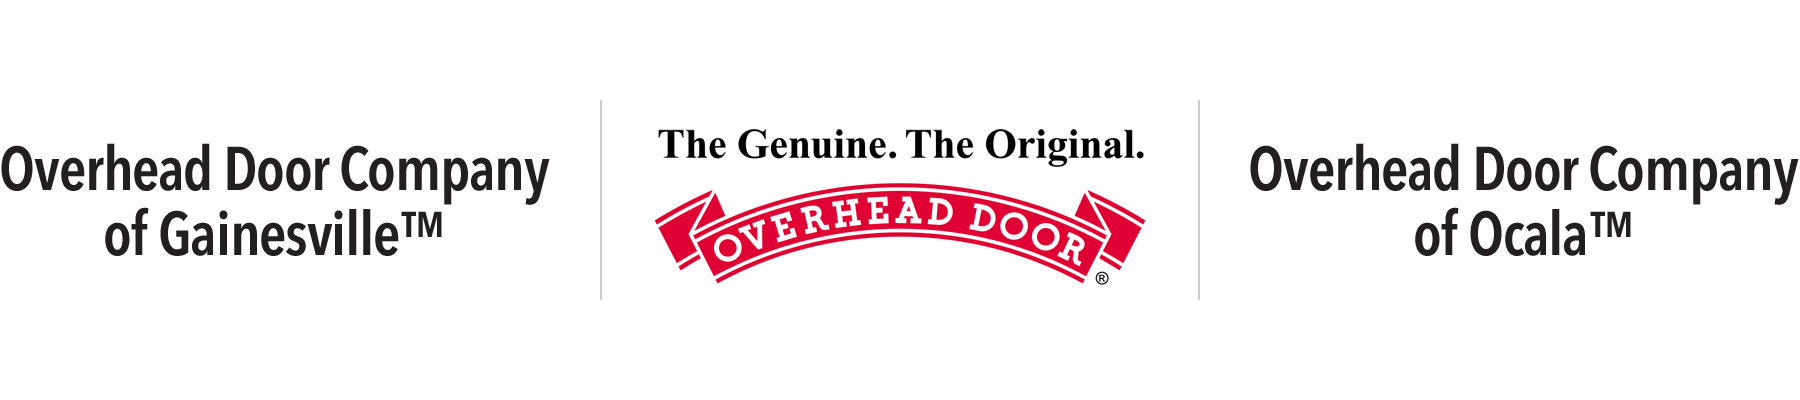 Overhead Door Company of Gainesville & Ocala™